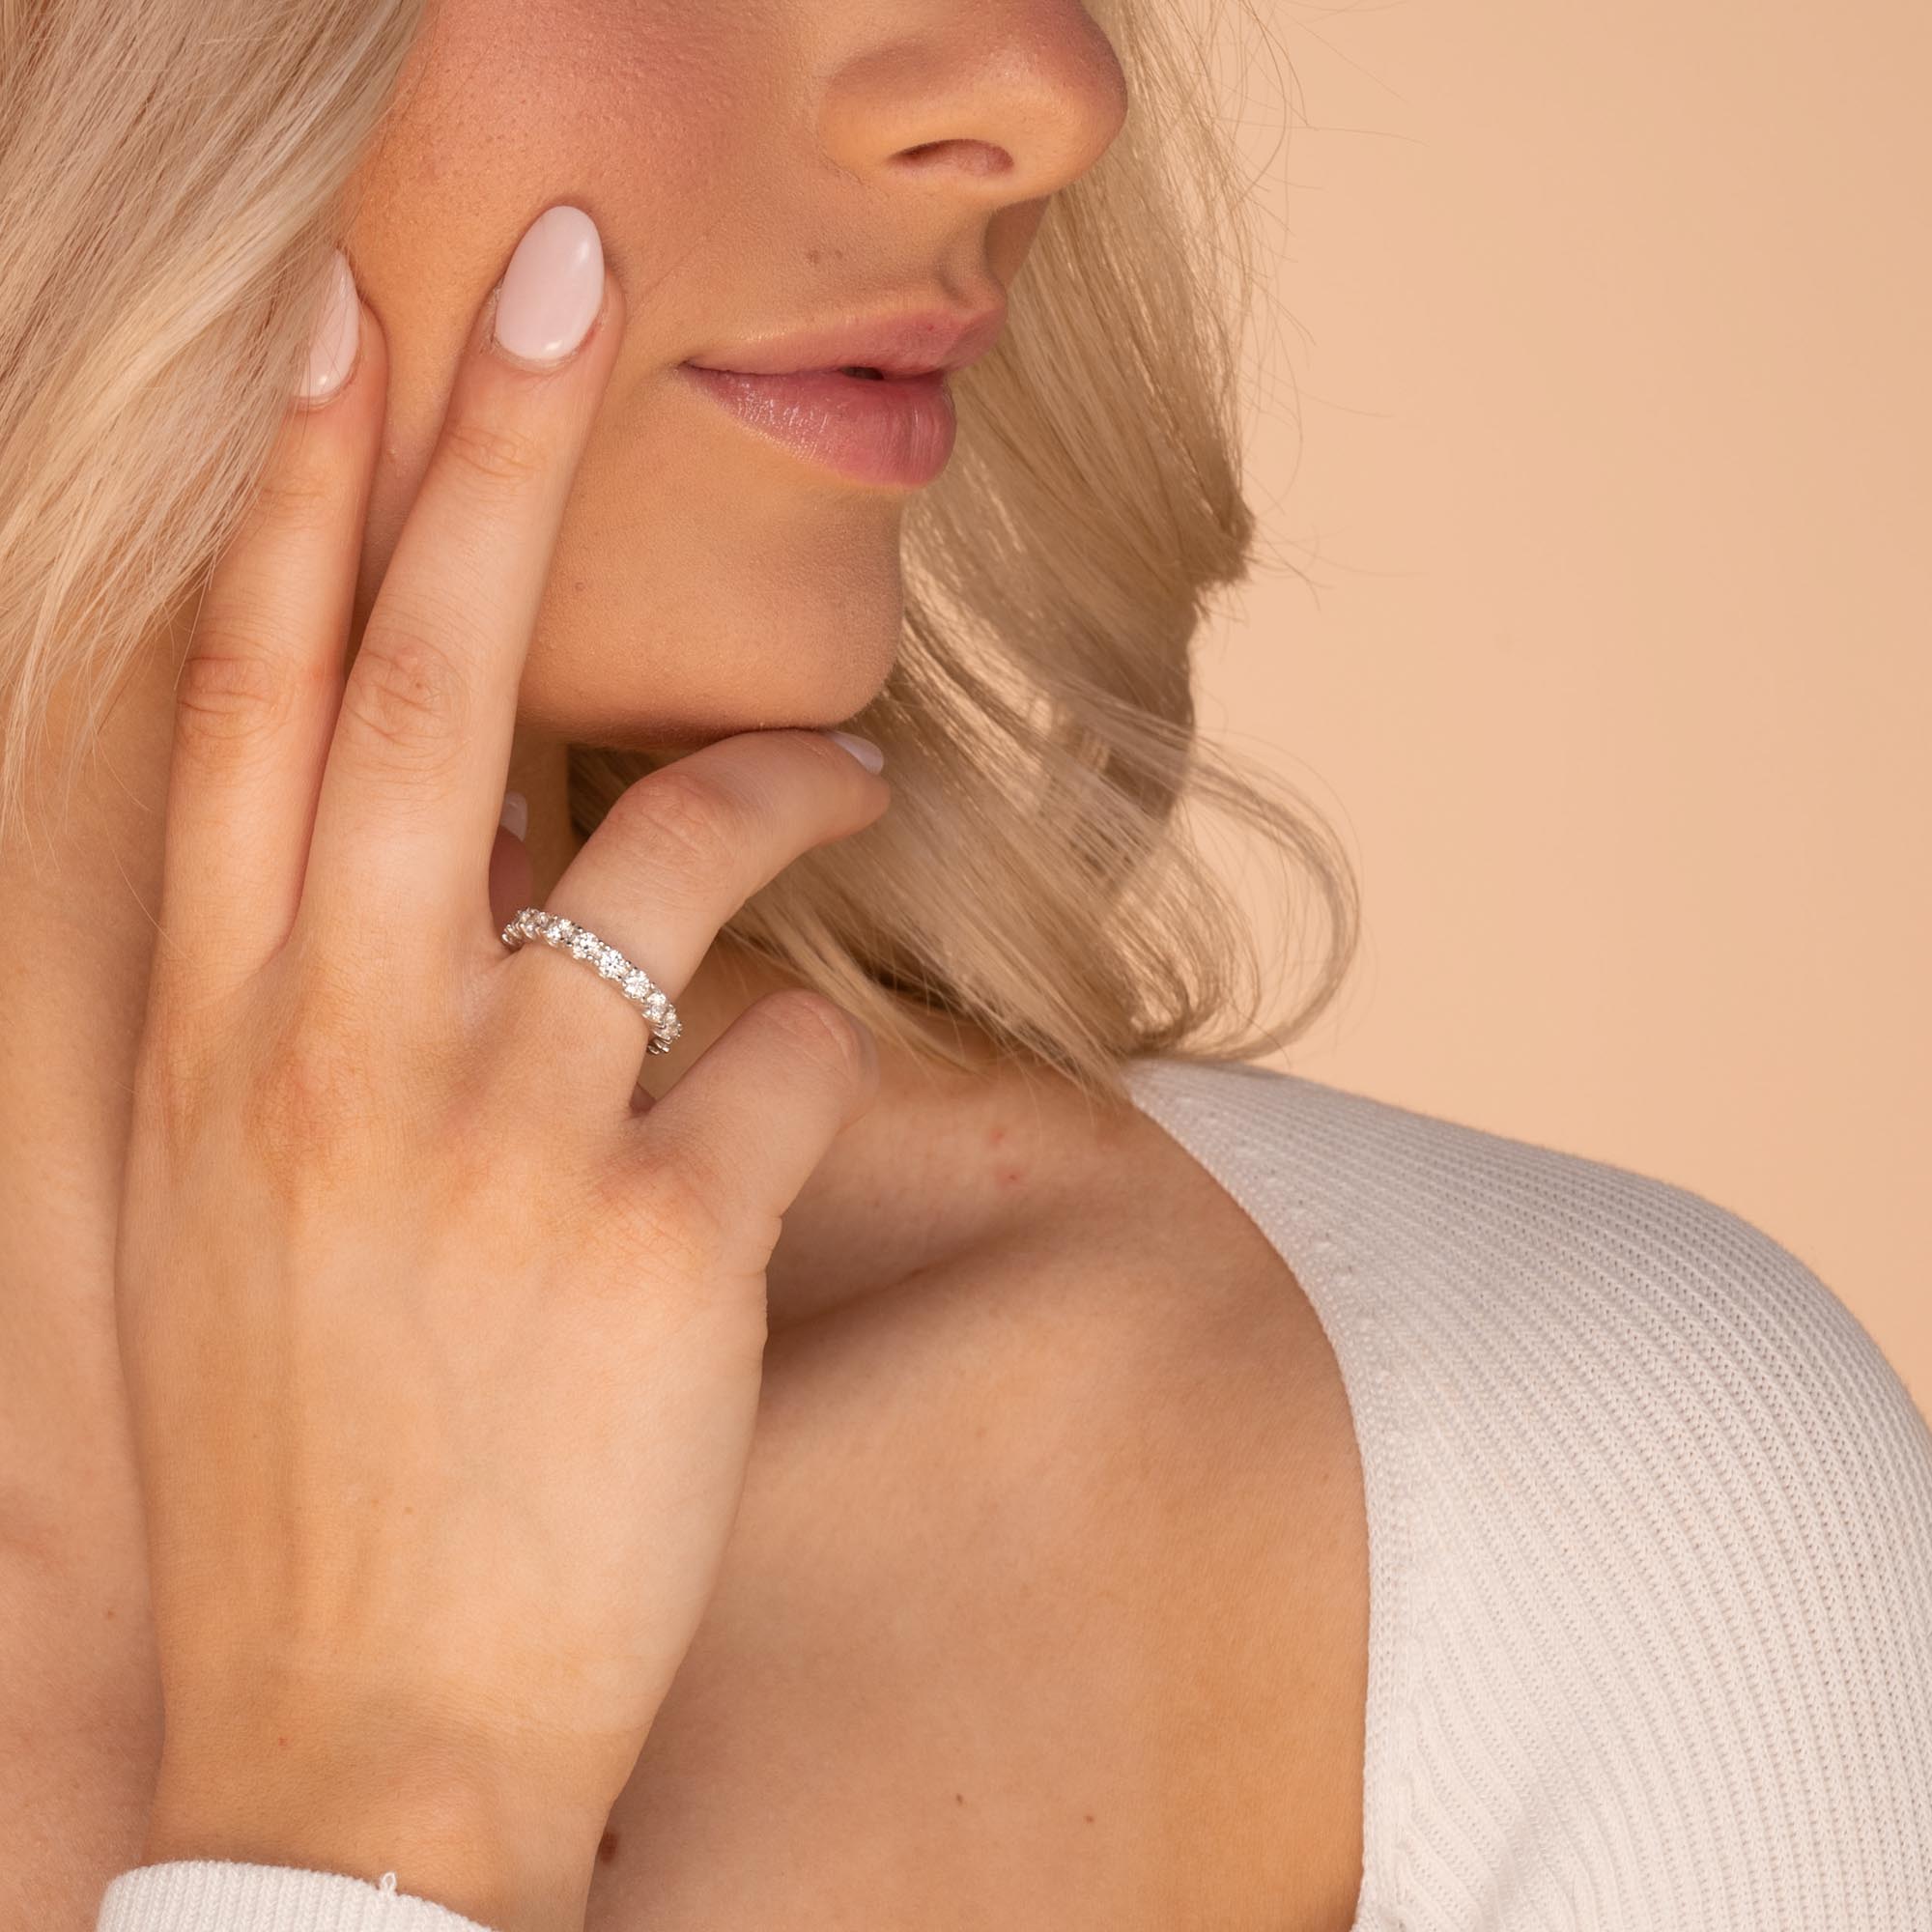 1.0ct 3mm The Scarlett Moissanite Diamond Engagement Ring